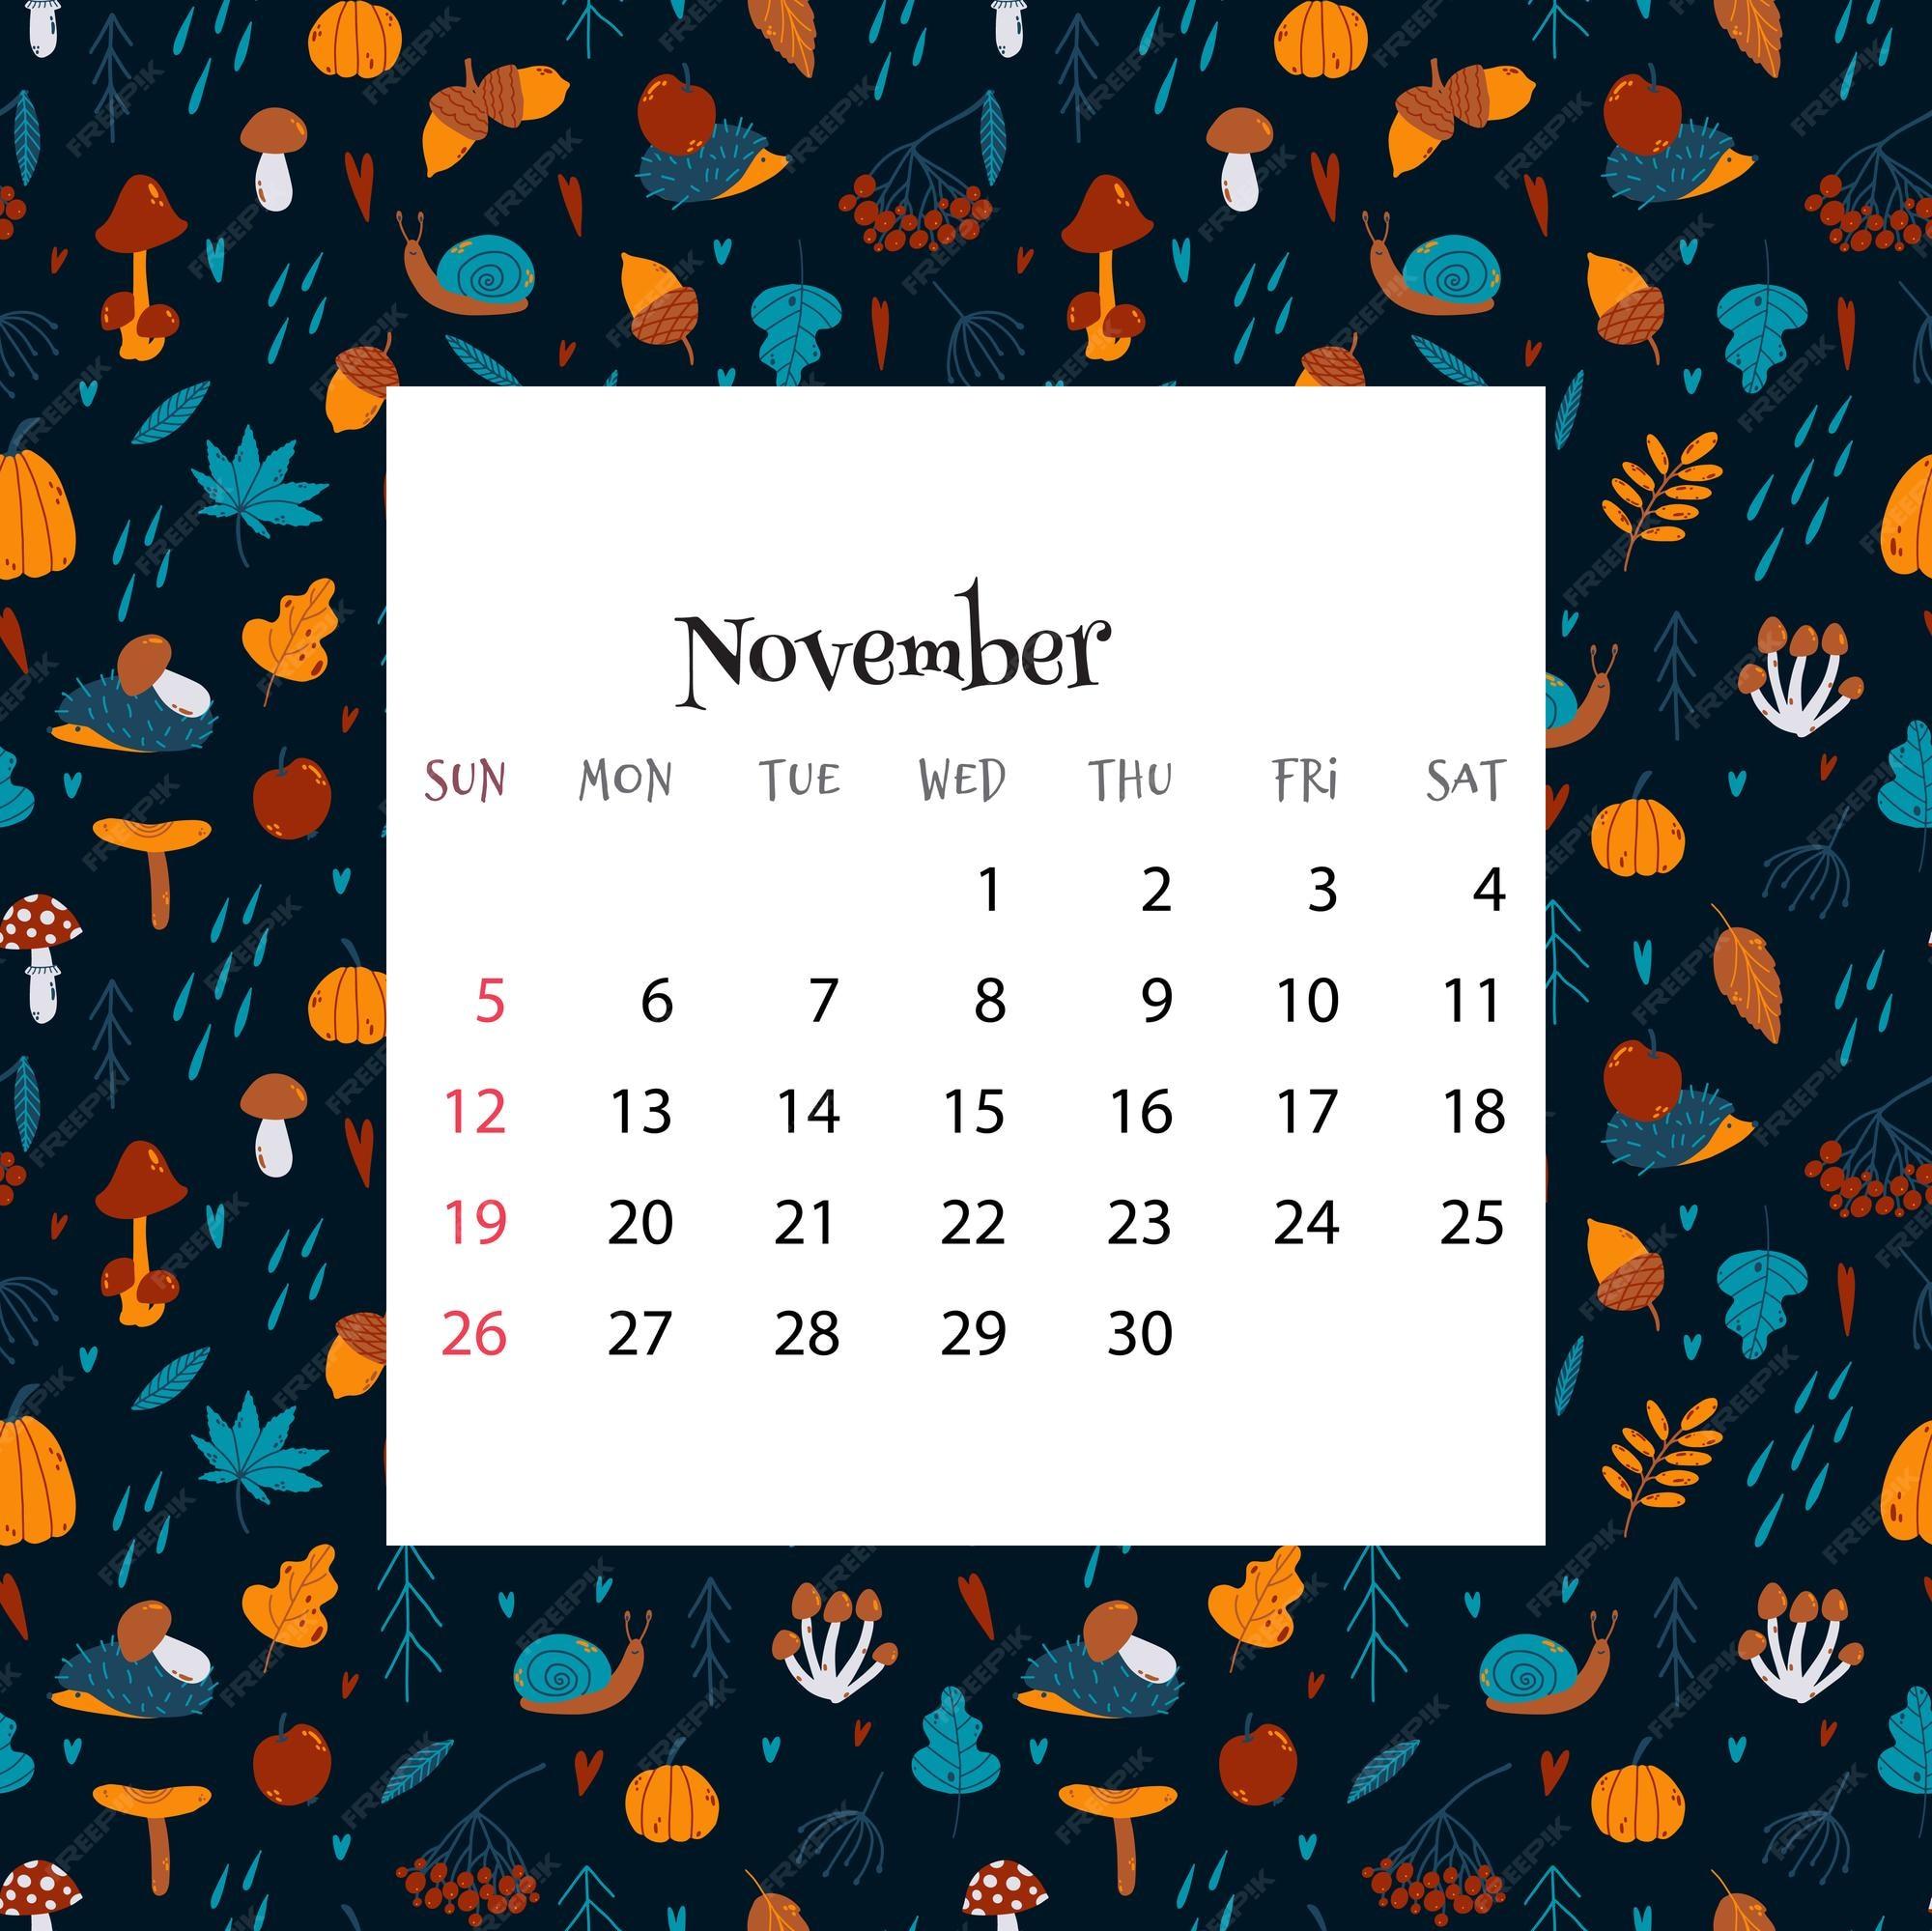 Premium Vector Calendar For November Illustration Of